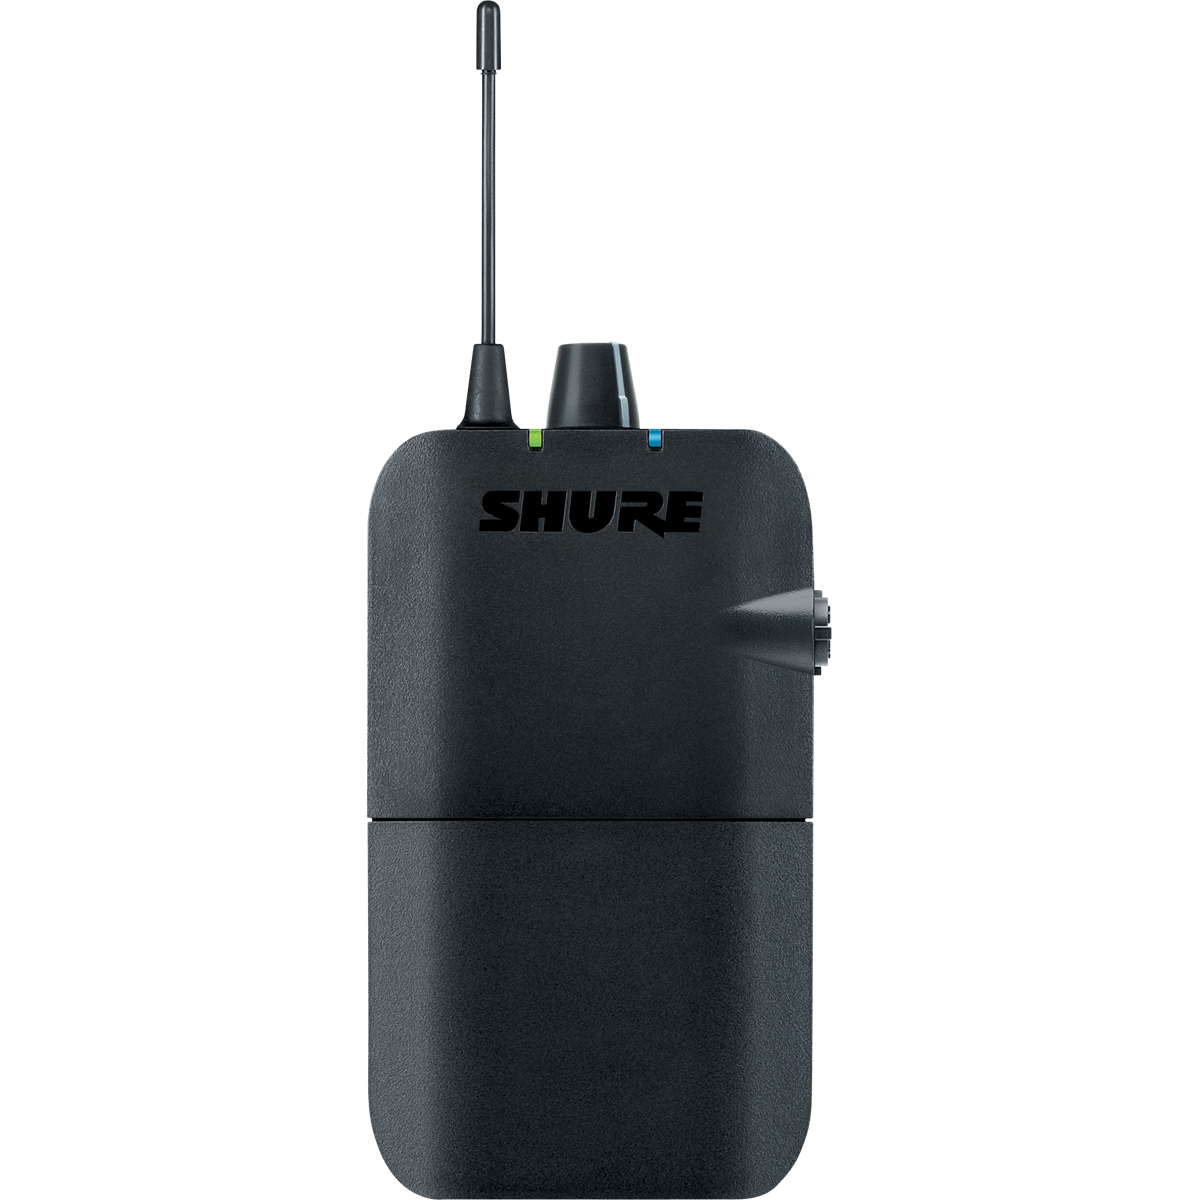 Ear monitors - Shure - PSM300 P3R Récepteur